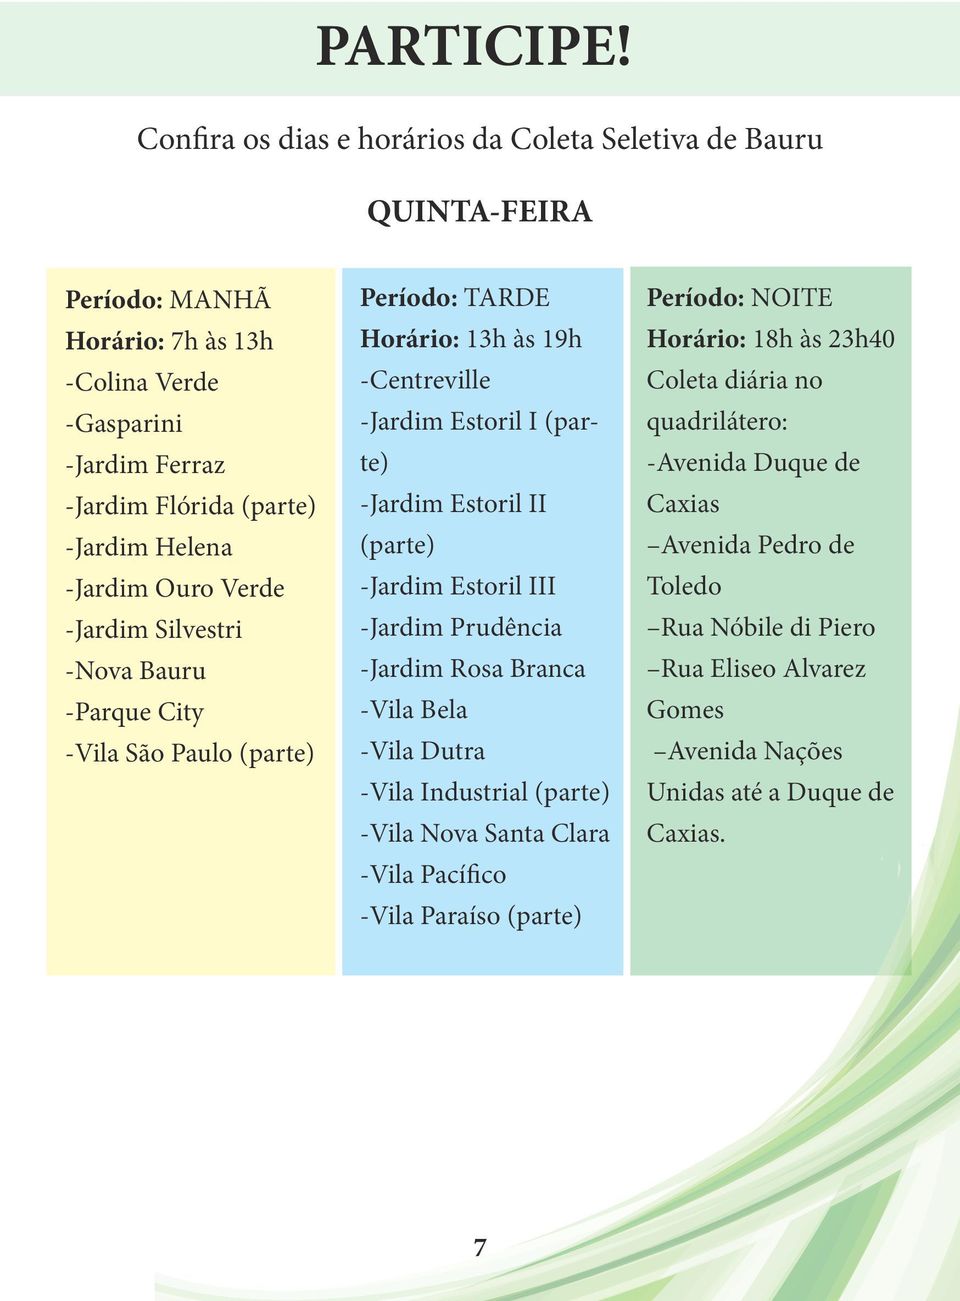 Ouro Verde -Jardim Silvestri -Nova Bauru -Parque City -Vila São Paulo (parte) Período: TARDE Horário: 13h às 19h -Centreville -Jardim Estoril I (parte) -Jardim Estoril II (parte) -Jardim